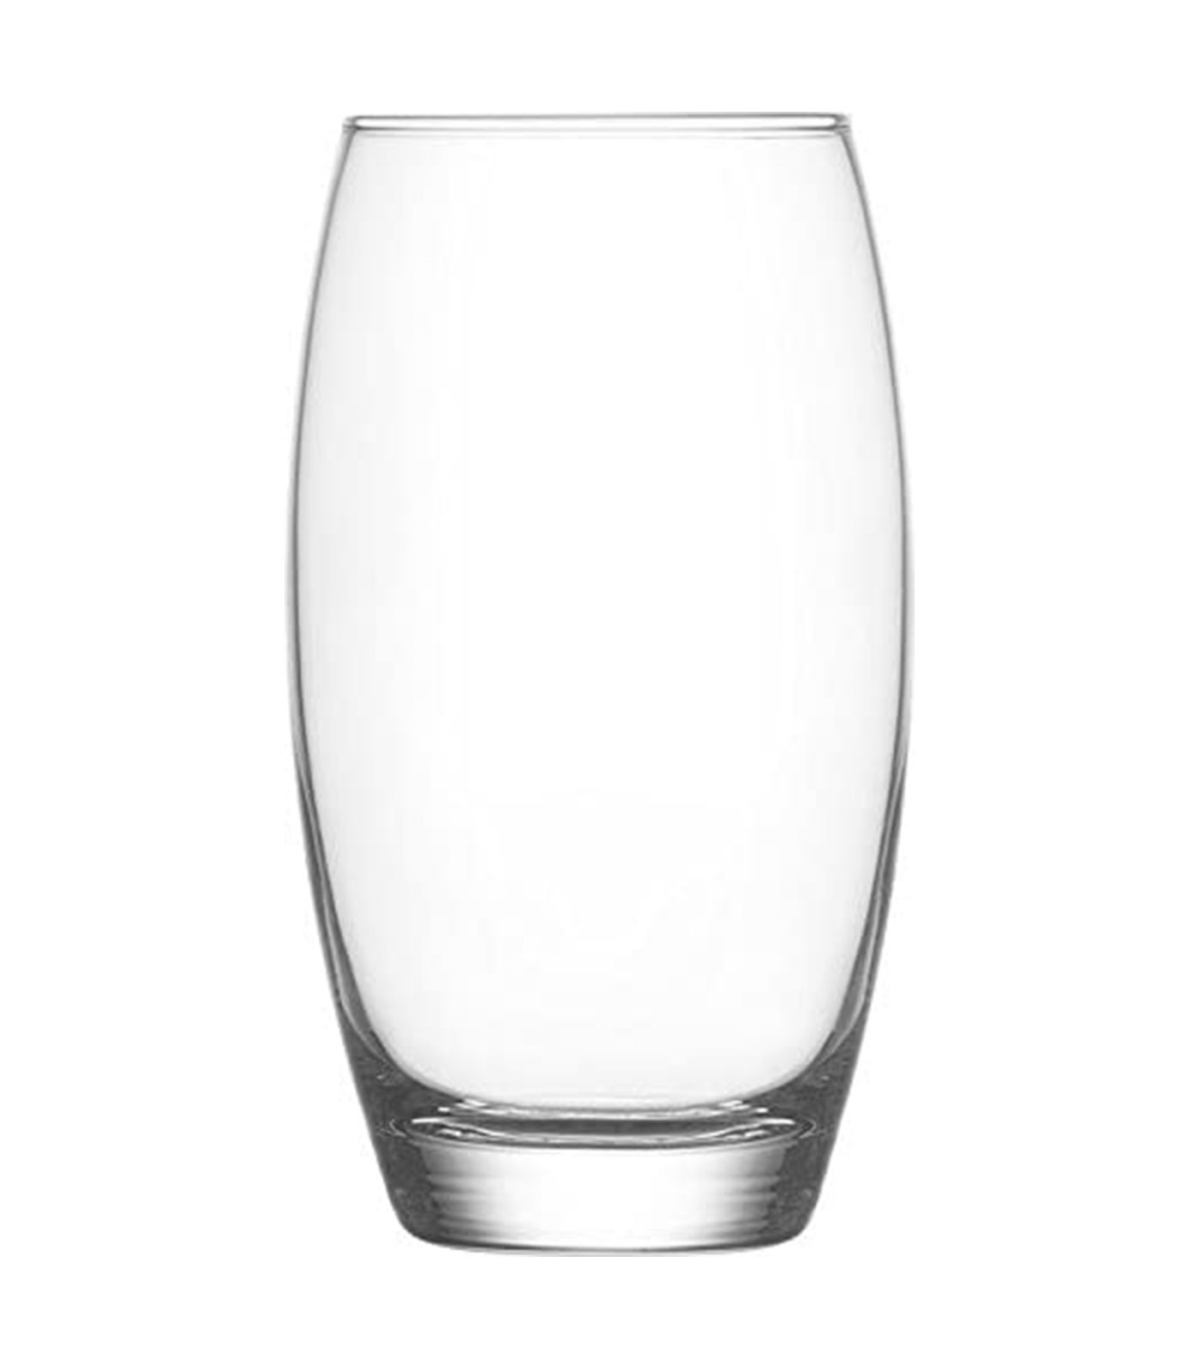 https://tradineur.com/107705-superlarge_default/tradineur--set-de-6-vasos-altos-de-cristal-empire-para-cocteles-combinados-refrescos-agua-aptos-para-lavavajillas-fiestas-510-ml.jpg